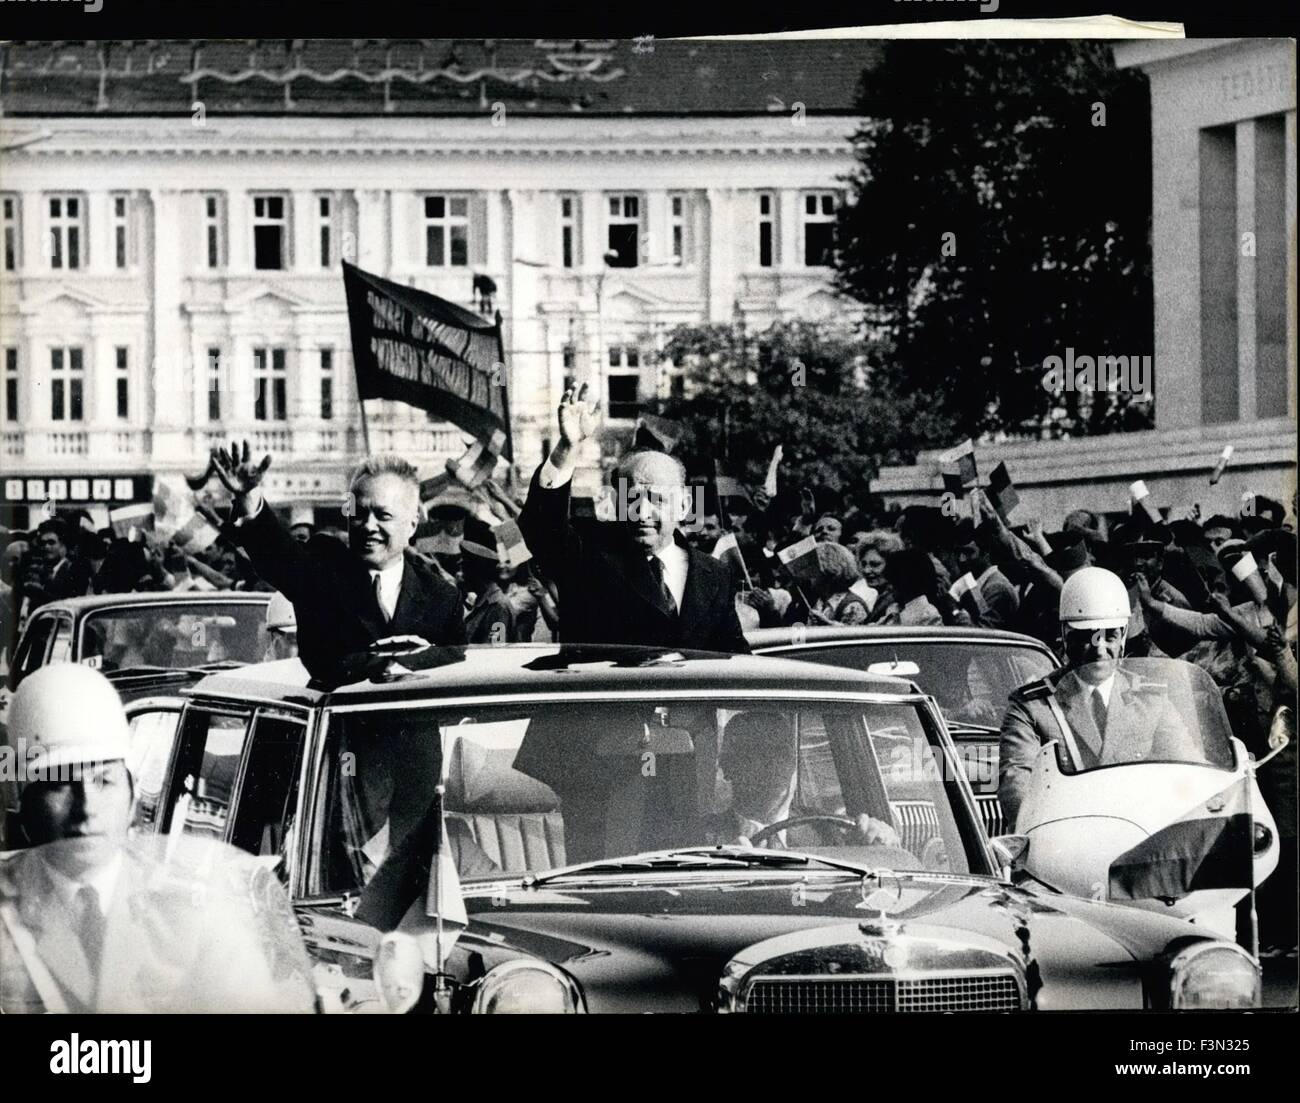 23. September 1974 - Nguyen Huu Tho in Sofia - A RSV Delegation kam unter der Leitung von NGUYEN HUU THO, Vorsitzender des Präsidiums des Zentralkomitees der nationalen Front für die Befreiung von Südvietnam und Vorsitzender des Rats der provisorischen revolutionären Regierung der Republik von Südvietnam in Sofia, zu einem offiziellen Besuch auf Einladung der bulgarischen Regierung. An der Flughafen Sofia, wurde die Delegation von TODOR SCHIWKOW/rechts begrüßt/erster Sekretär des Zentralkomitees der bulgarischen kommunistischen Partei und Präsident des Rates. Foto zeigt: t Stockfoto